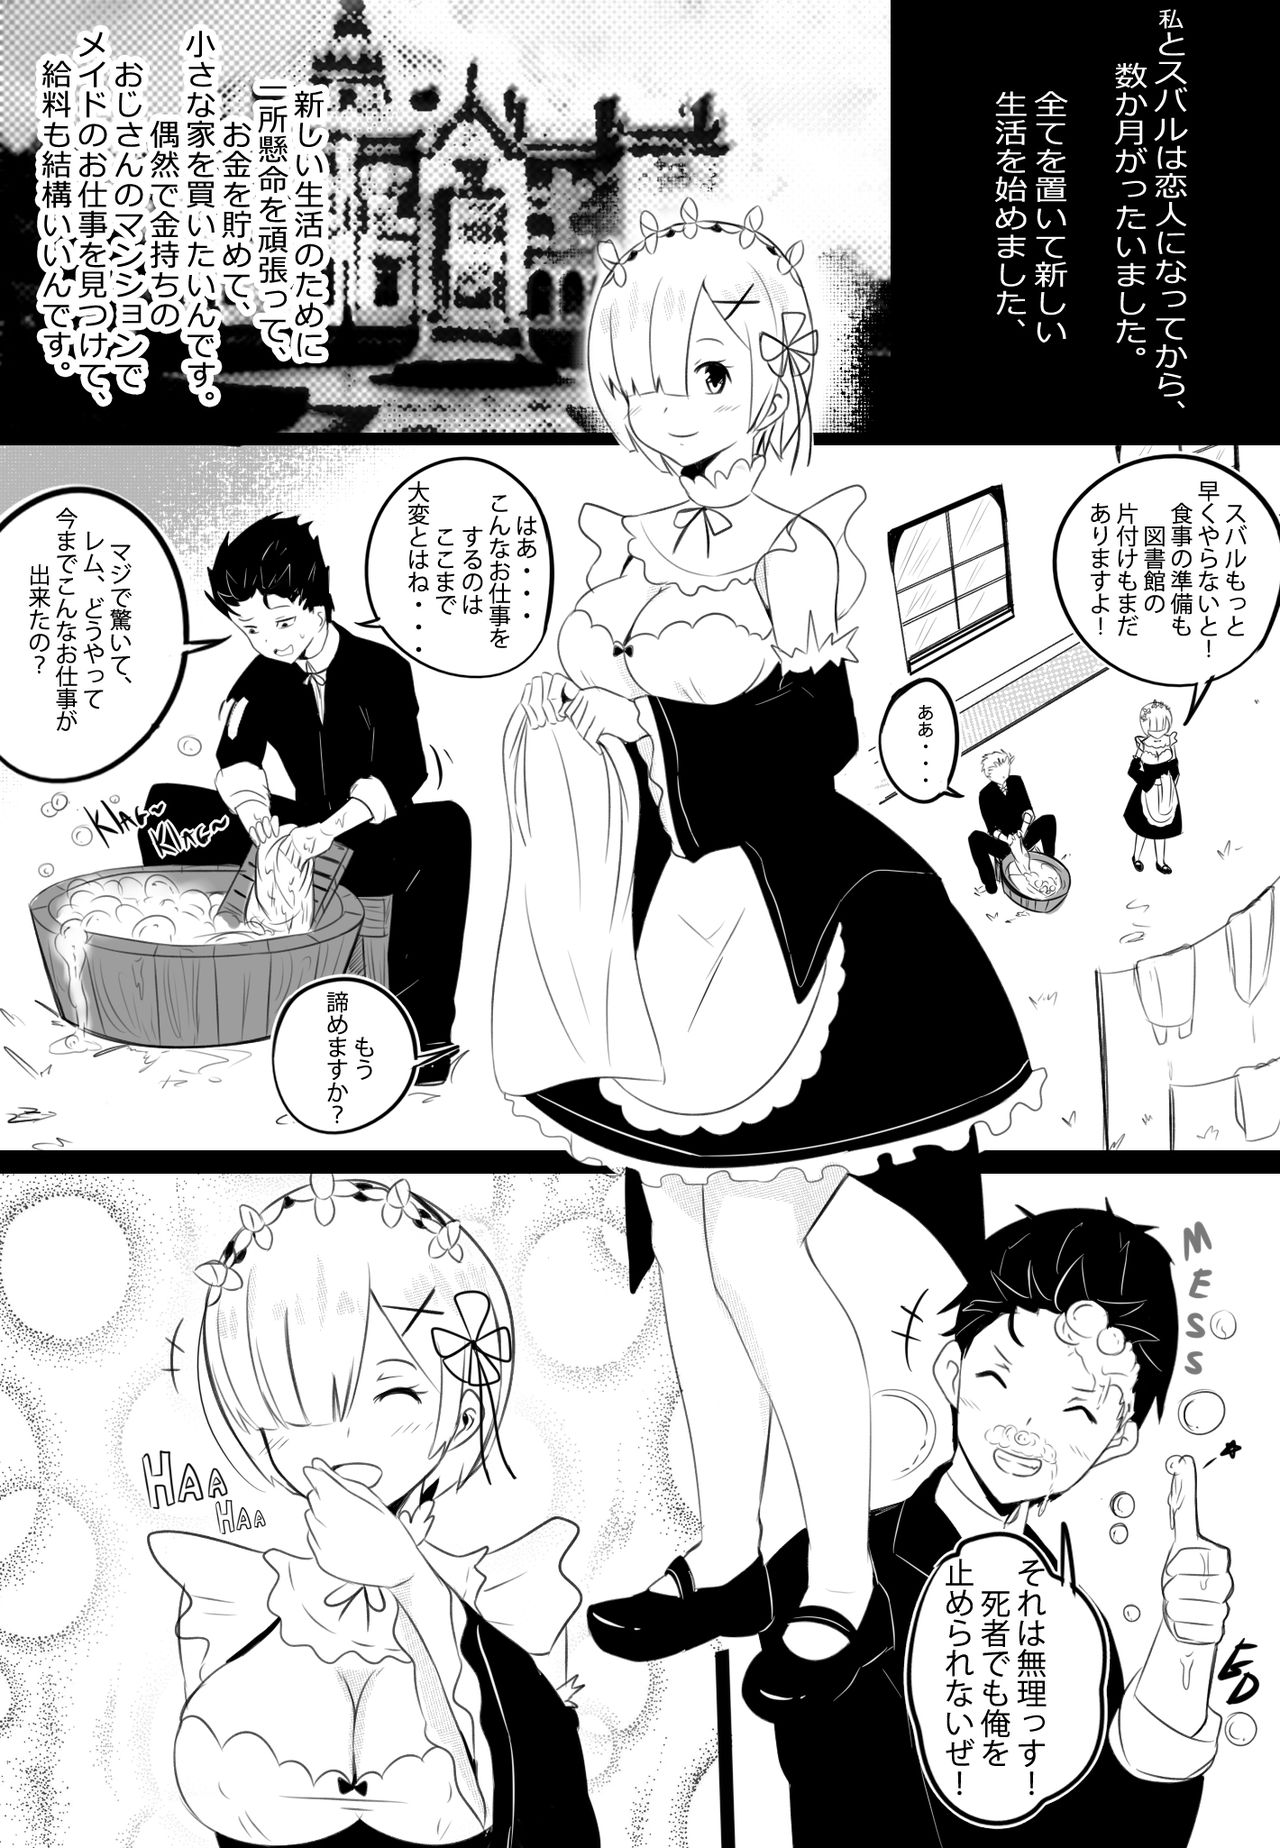 [Merkonig] B-Trayal 17 Rem (Re:Zero kara Hajimeru Isekai Seikatsu) page 3 full